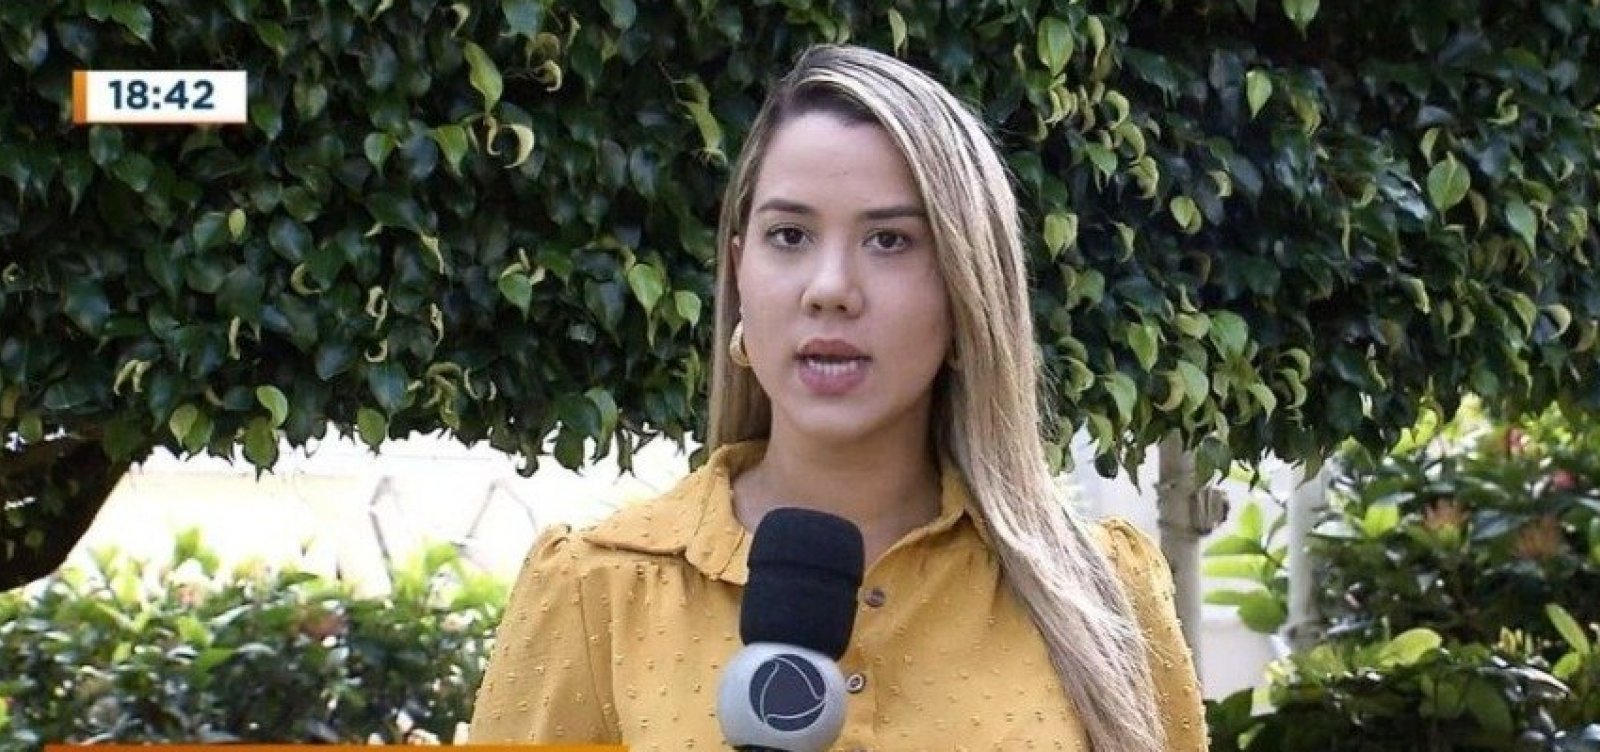 Jornalista Daniela Mazzei é investigada pela polícia, diz delegado